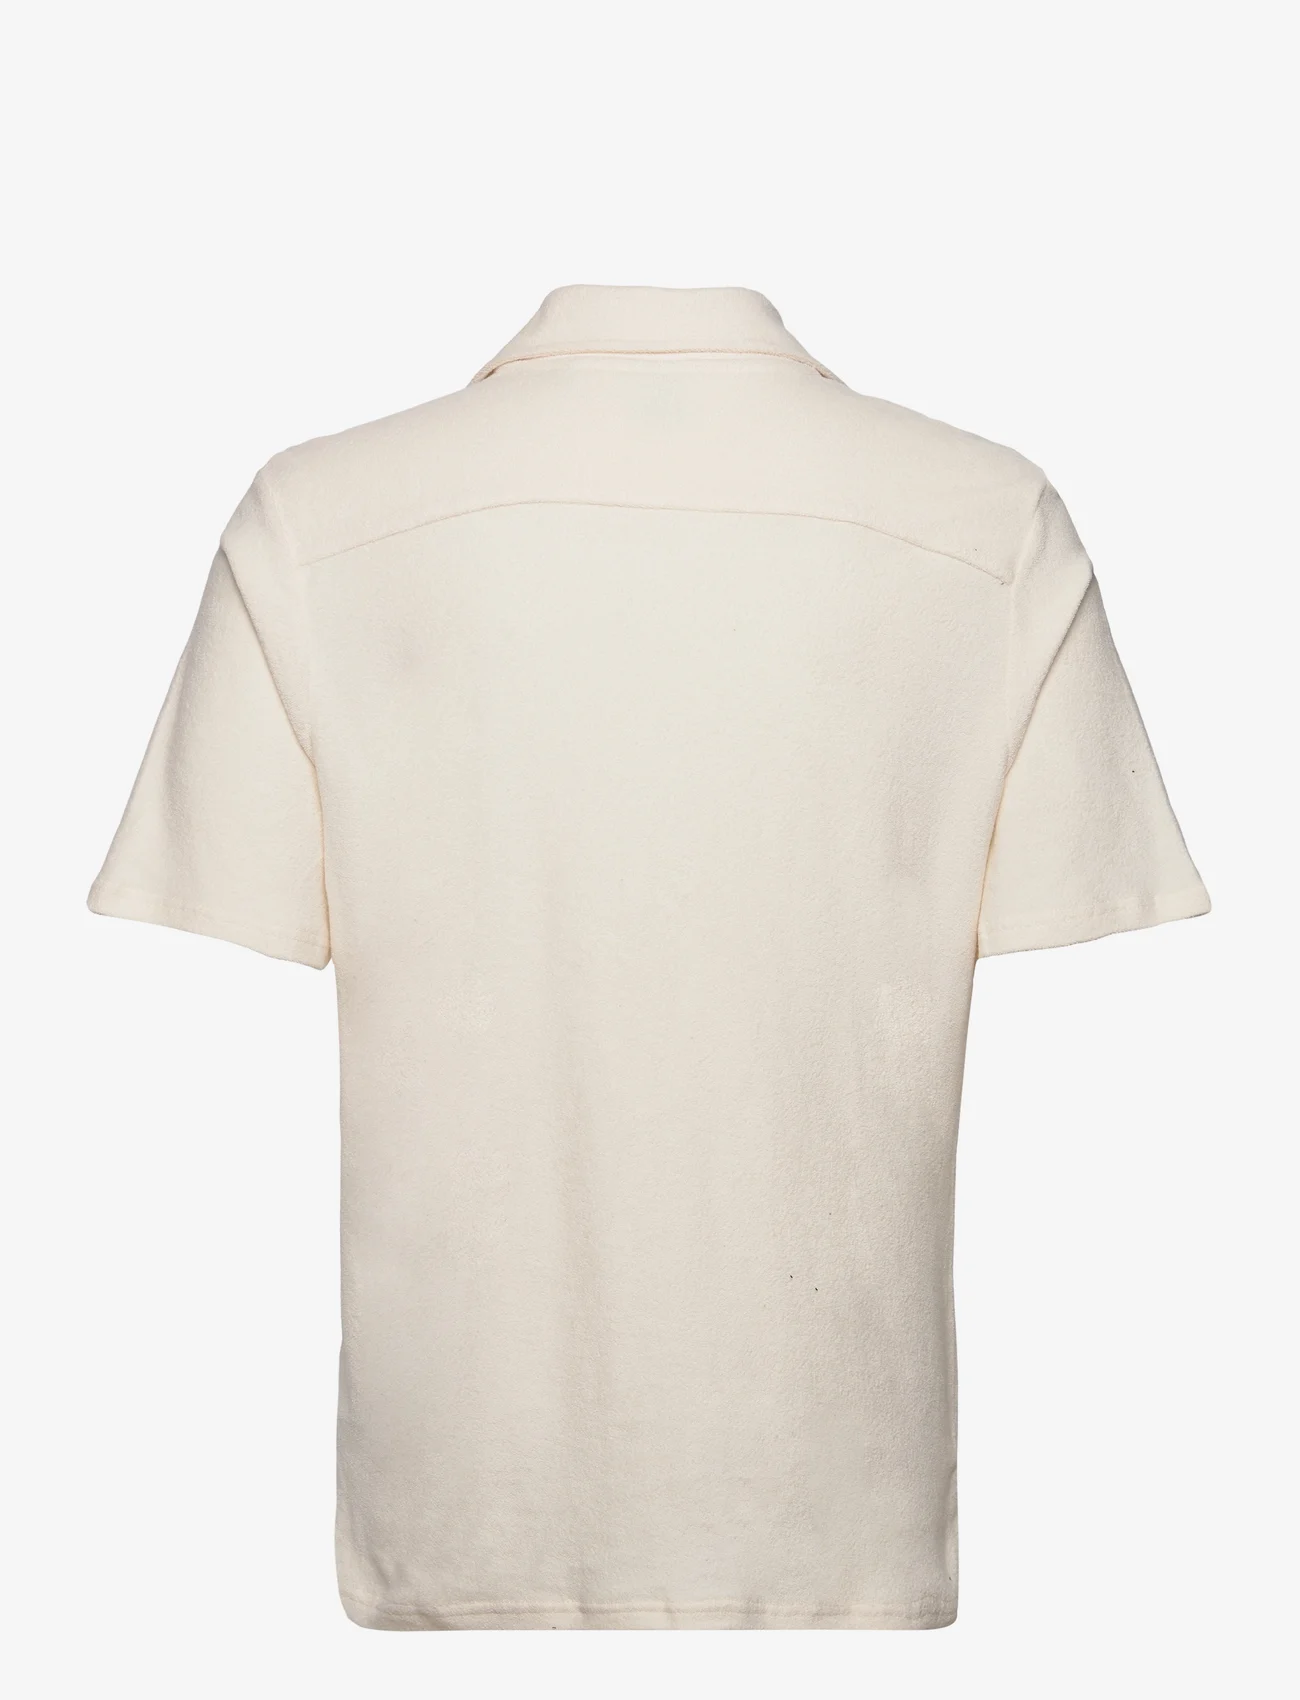 ONLY & SONS - ONSDAVIS REG TERRY SHIRT - basic skjorter - antique white - 1